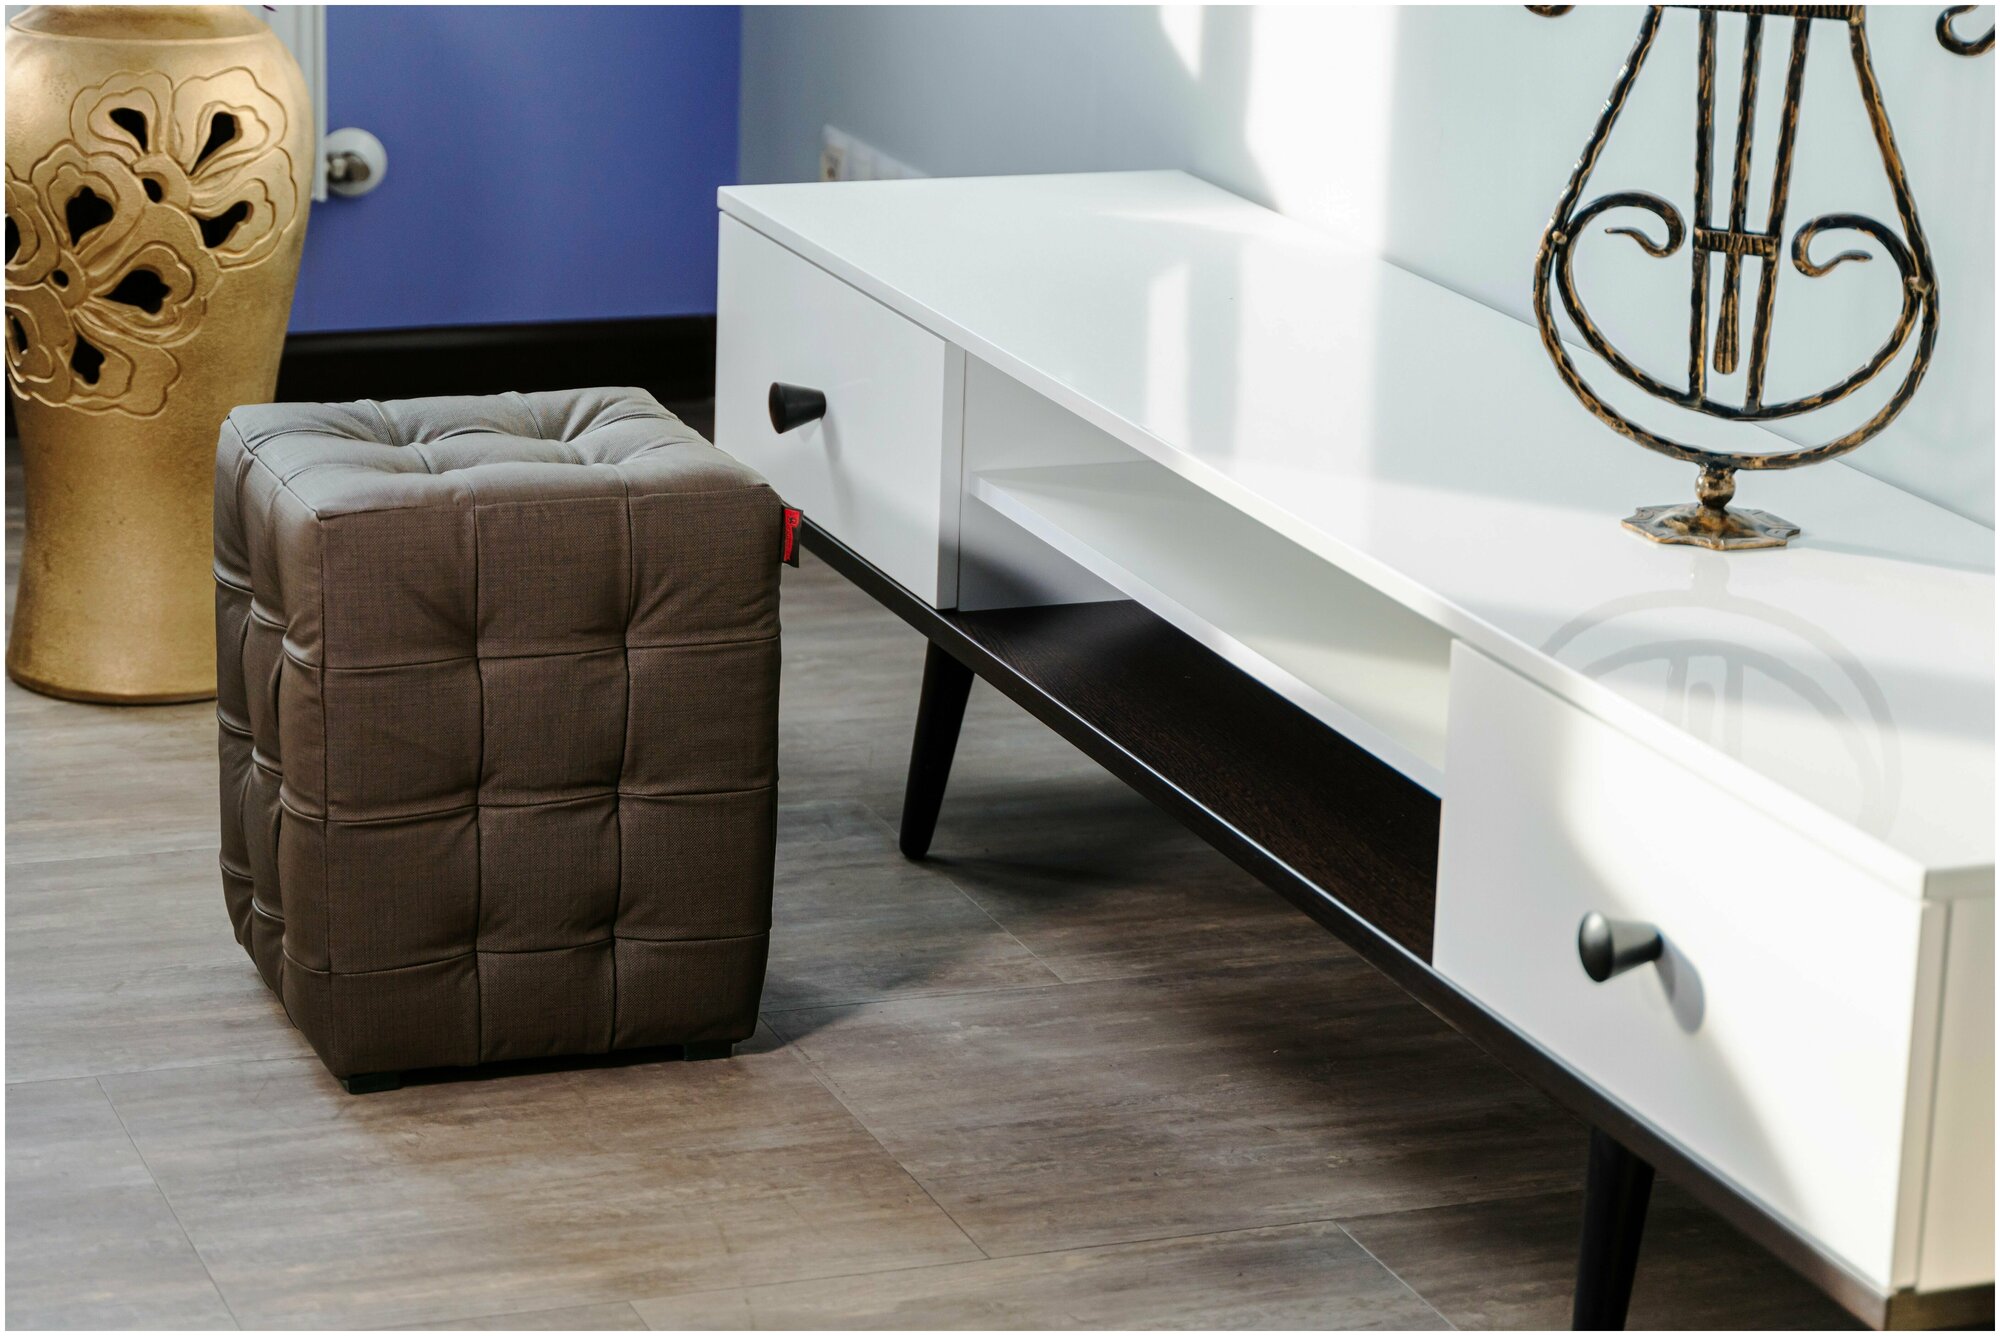 Пуфик БонМебель Модерн-2 мини, лен коричневый, экокожа, 30х30х40 см, пуфик в прихожую, пуф, мебель, прихожая мебель